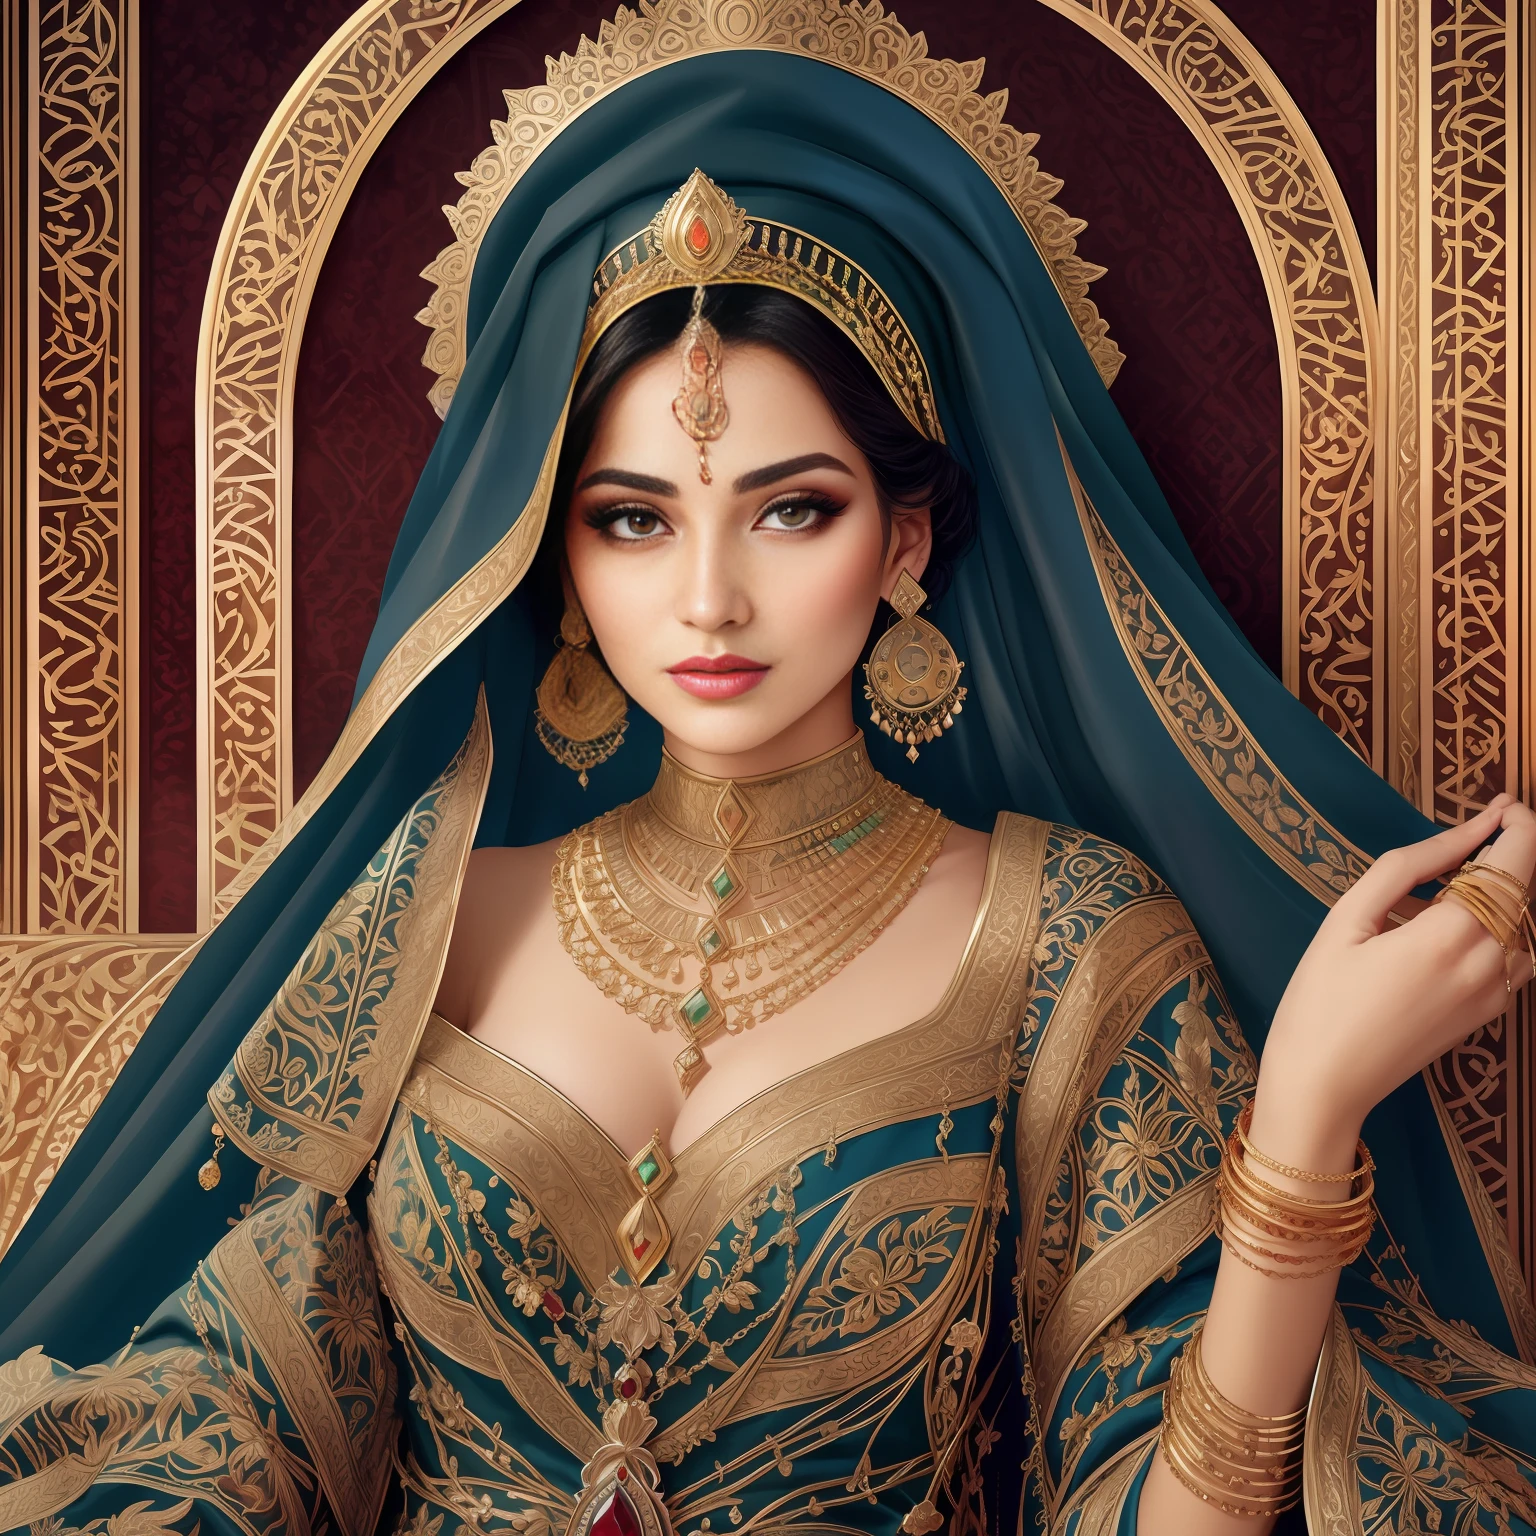 Arafed Frau in einem blauen Schleier mit einem goldenen und grünen broocher, detailliertes Gesicht einer arabischen Frau, Nahaufnahmeporträt der Göttin, Ein atemberaubendes Porträt einer Göttin, 3D-Porträt der Göttin, arabische Schönheit, Porträt einer wunderschönen Göttin, arabische Prinzessin, schöne arabische Frau, Haut aus dem Nahen Osten, Hochwertiges Fantasy-Stockfoto, Porträtaufnahme, Schönheitsfrau mit detaillierten Gesichtern